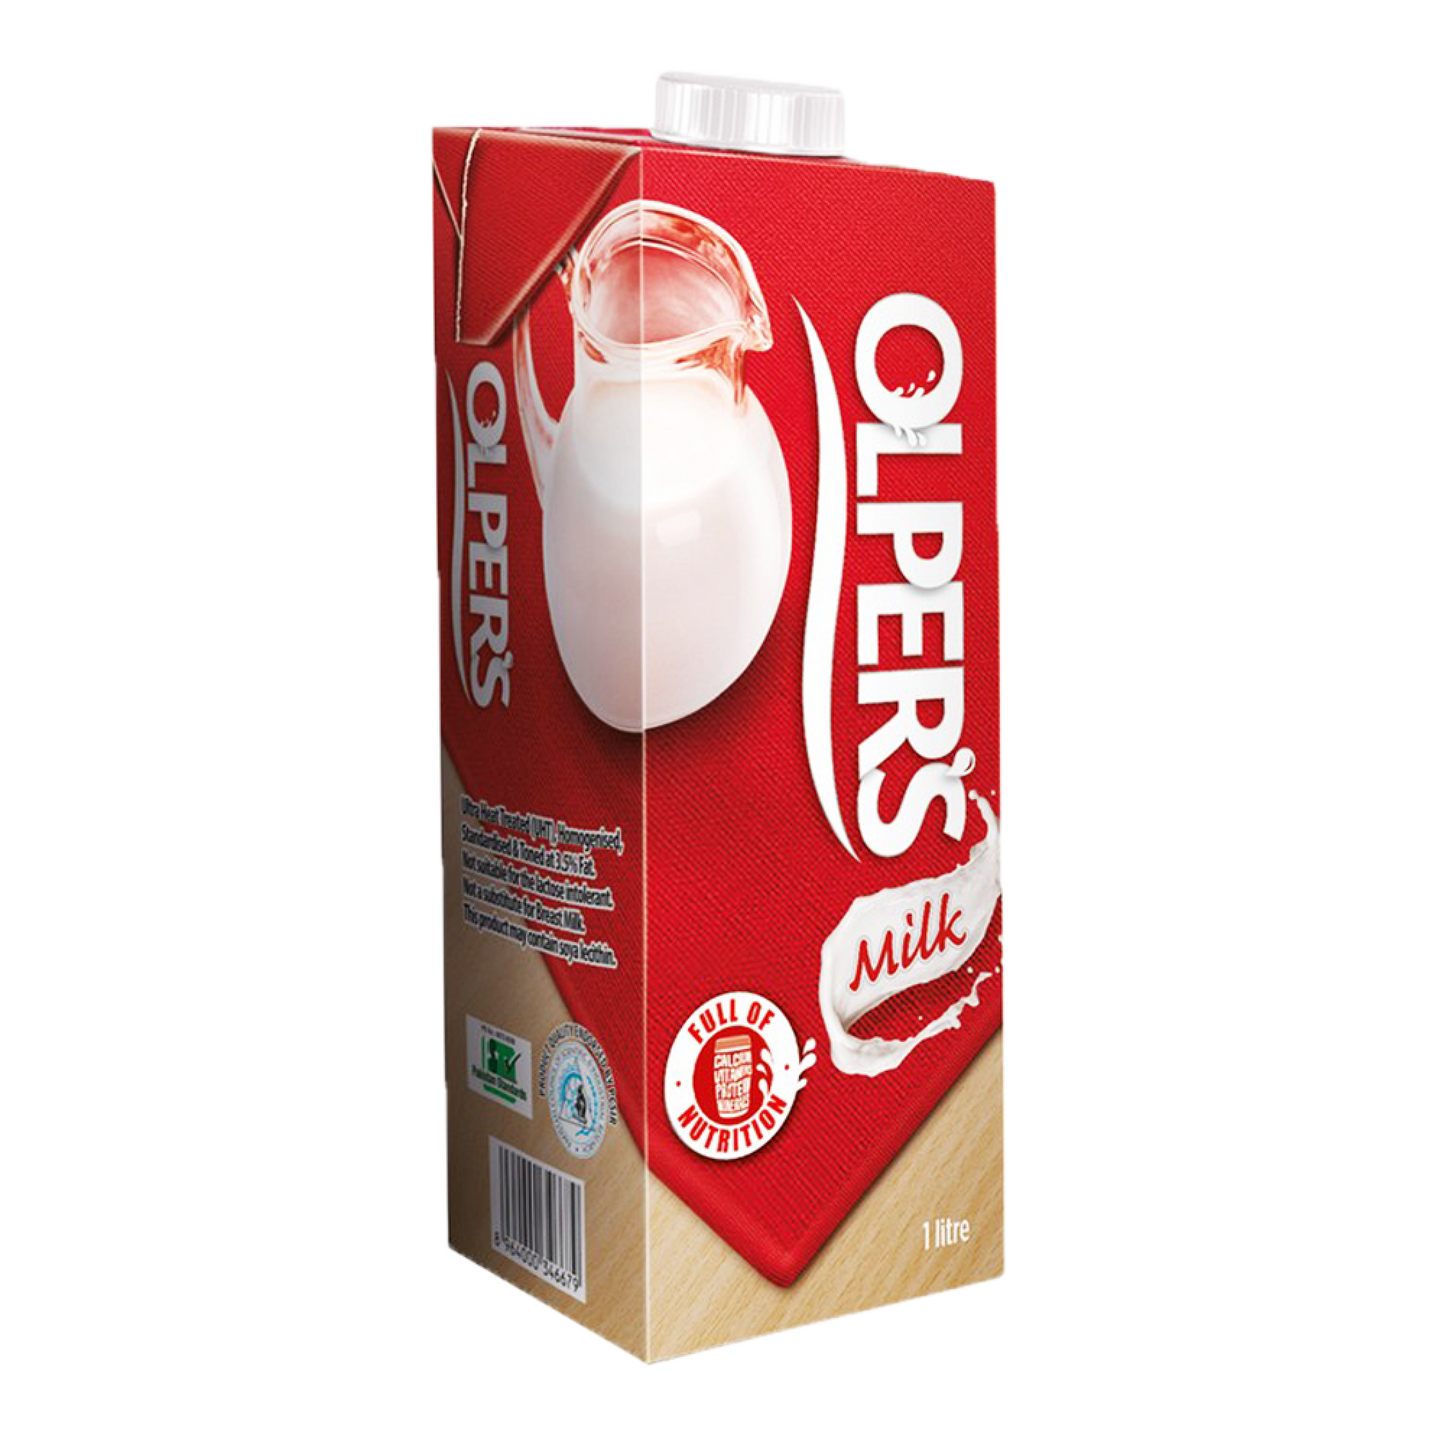 Olpers milk 1.5L